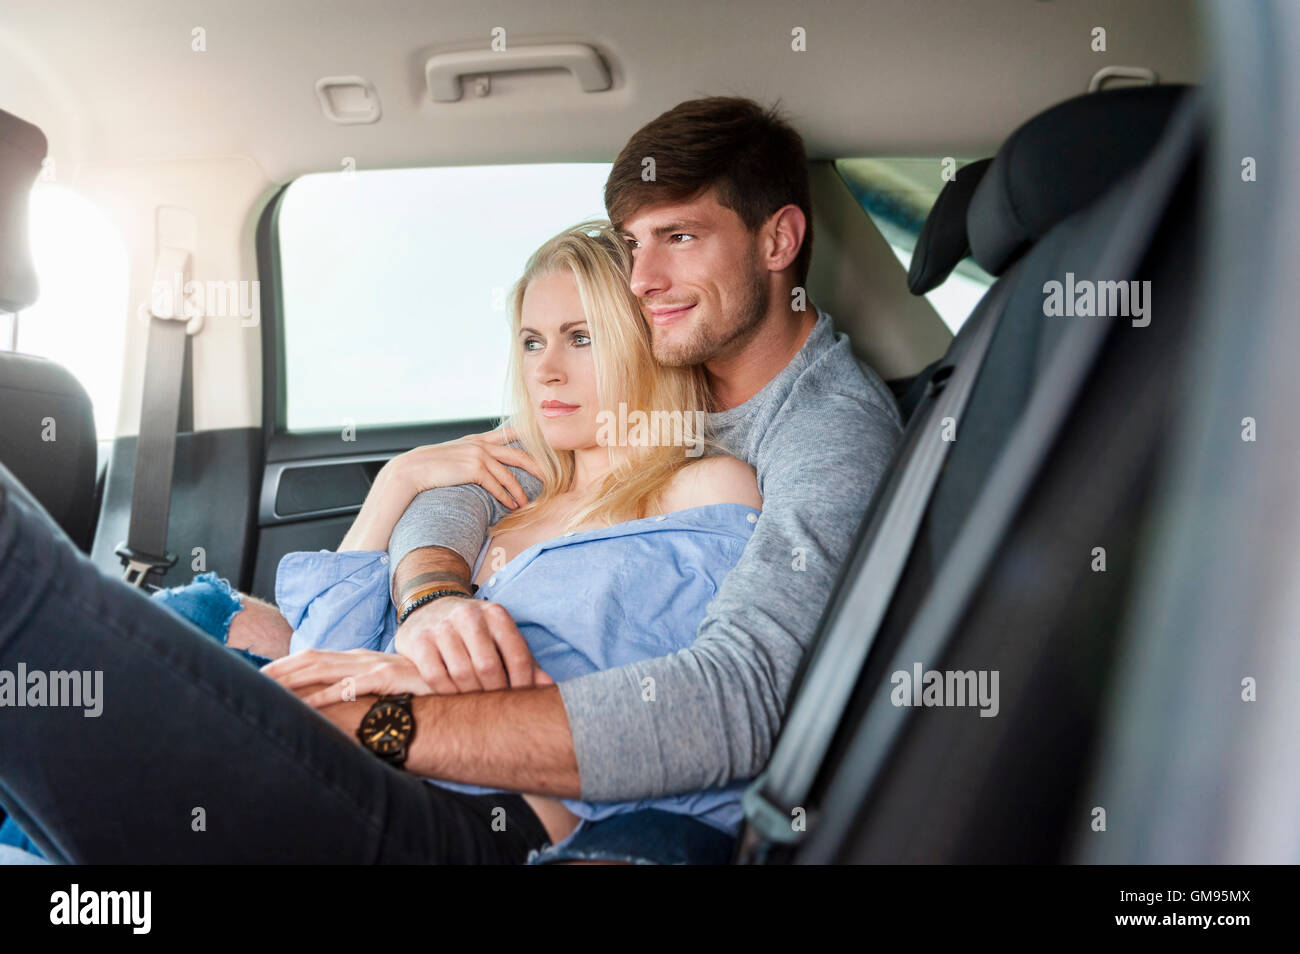 30-ти летняя блондинка трахается раком и в разных позах на заднем сиденье такси